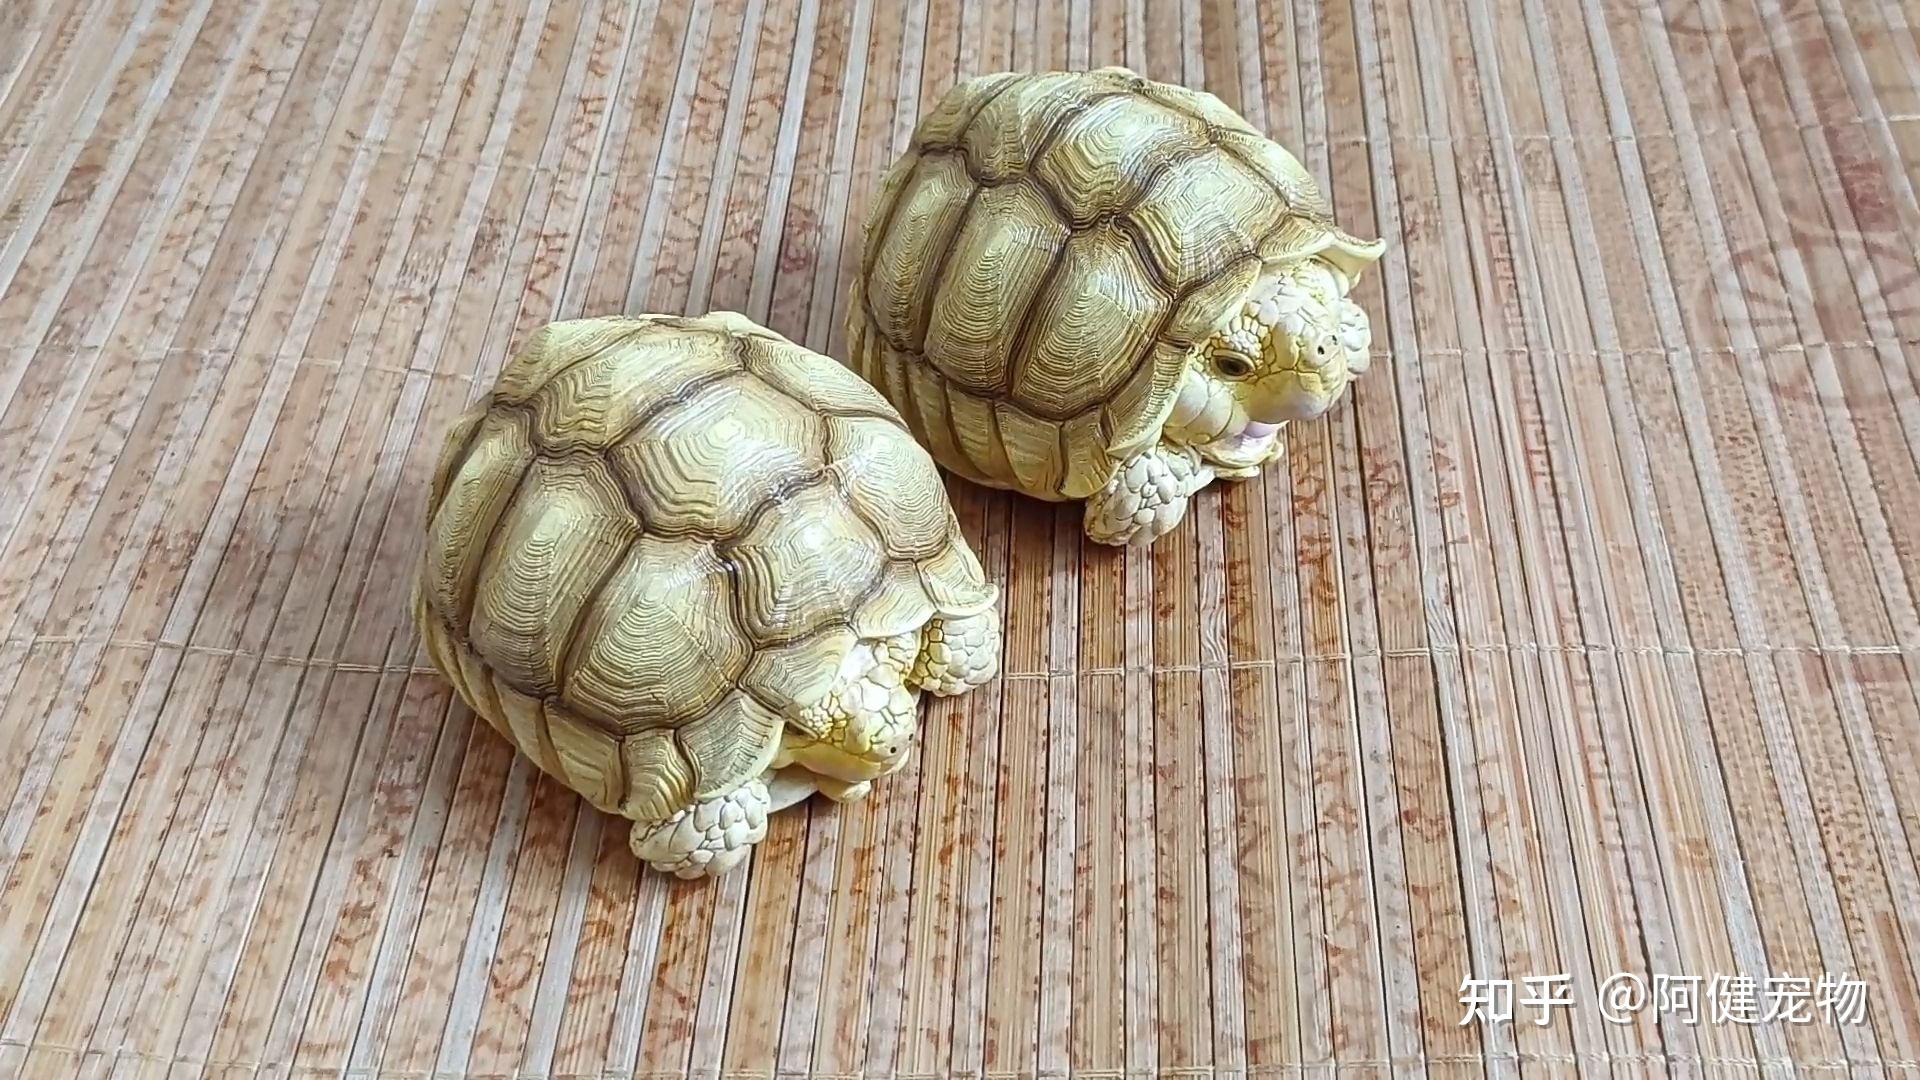 缅甸陆龟-非法贸易野生动物与制品鉴别-图片